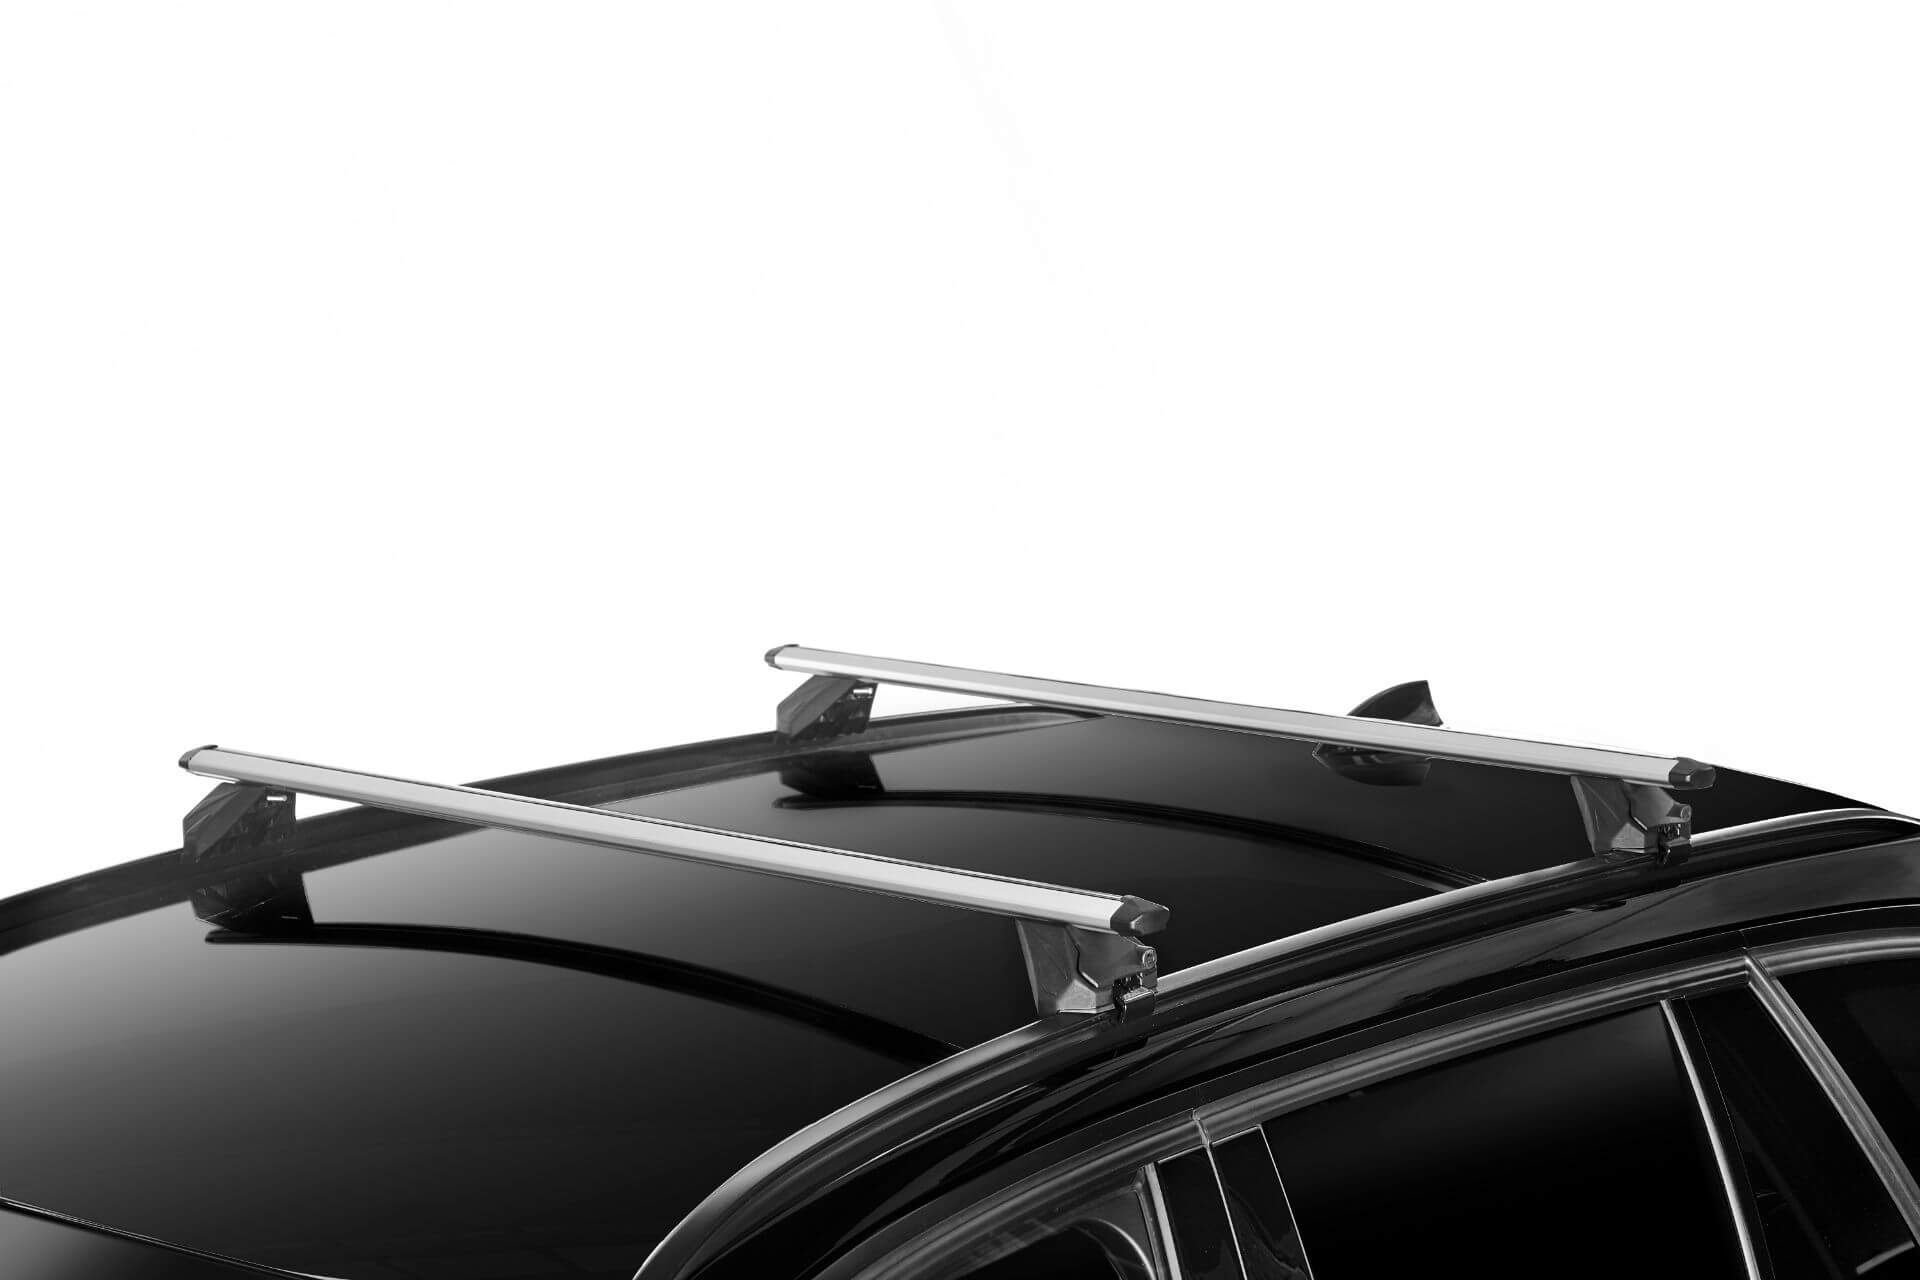 Barre de toit BMW X1 - Équipement auto